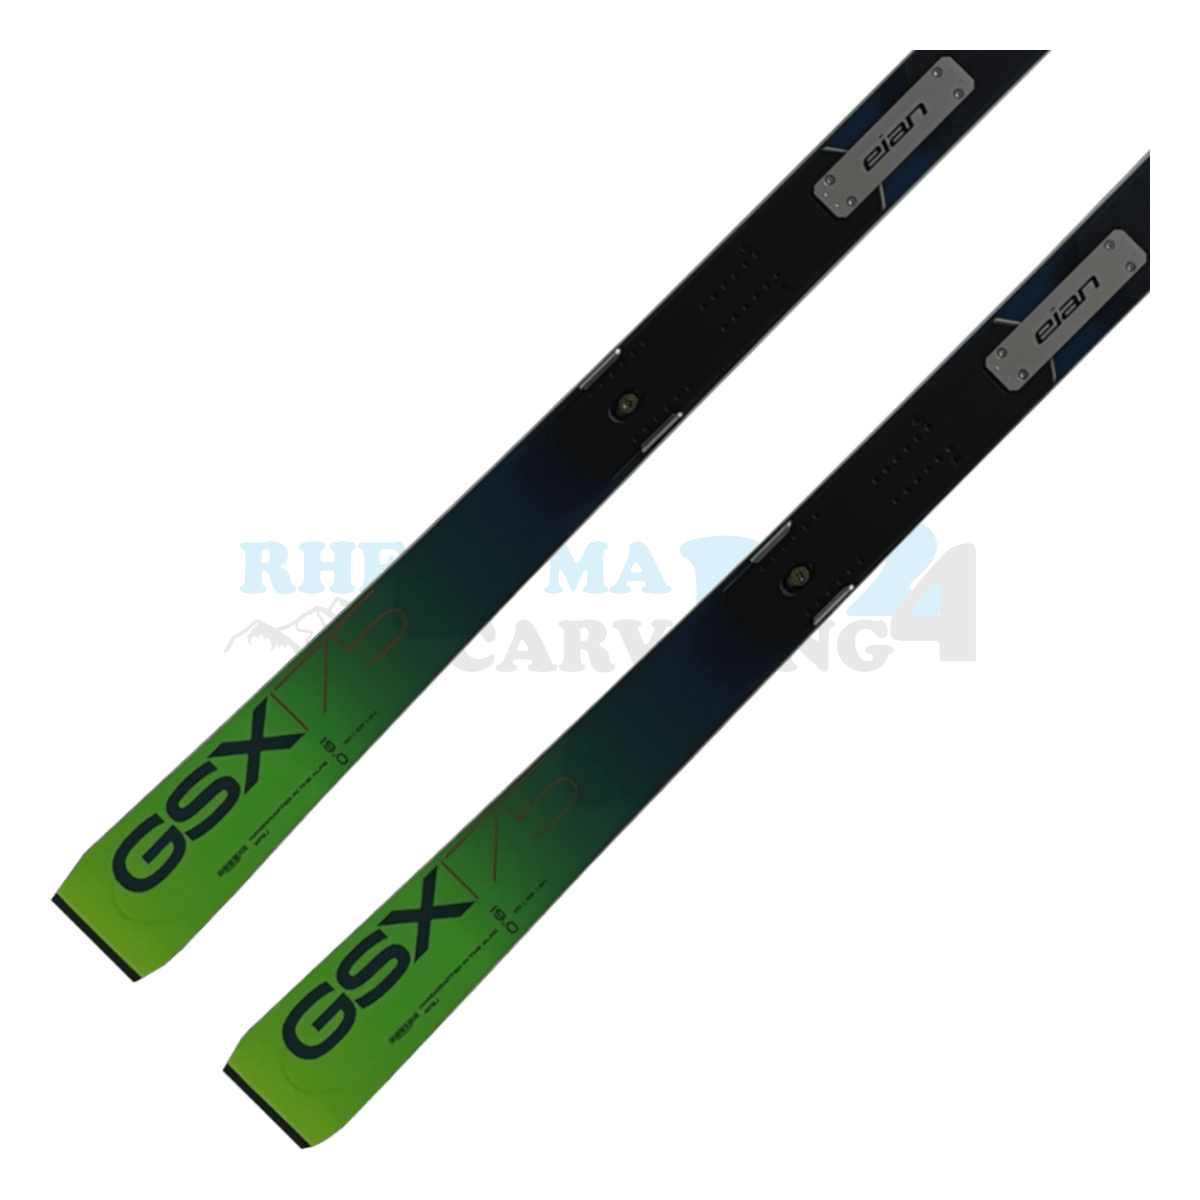 Elan GSX Master mit der Rennplatte, der Ski ist aus dem Jahr 2020, die Farbe ist grün, die Ansicht des unteren Teils des Skis